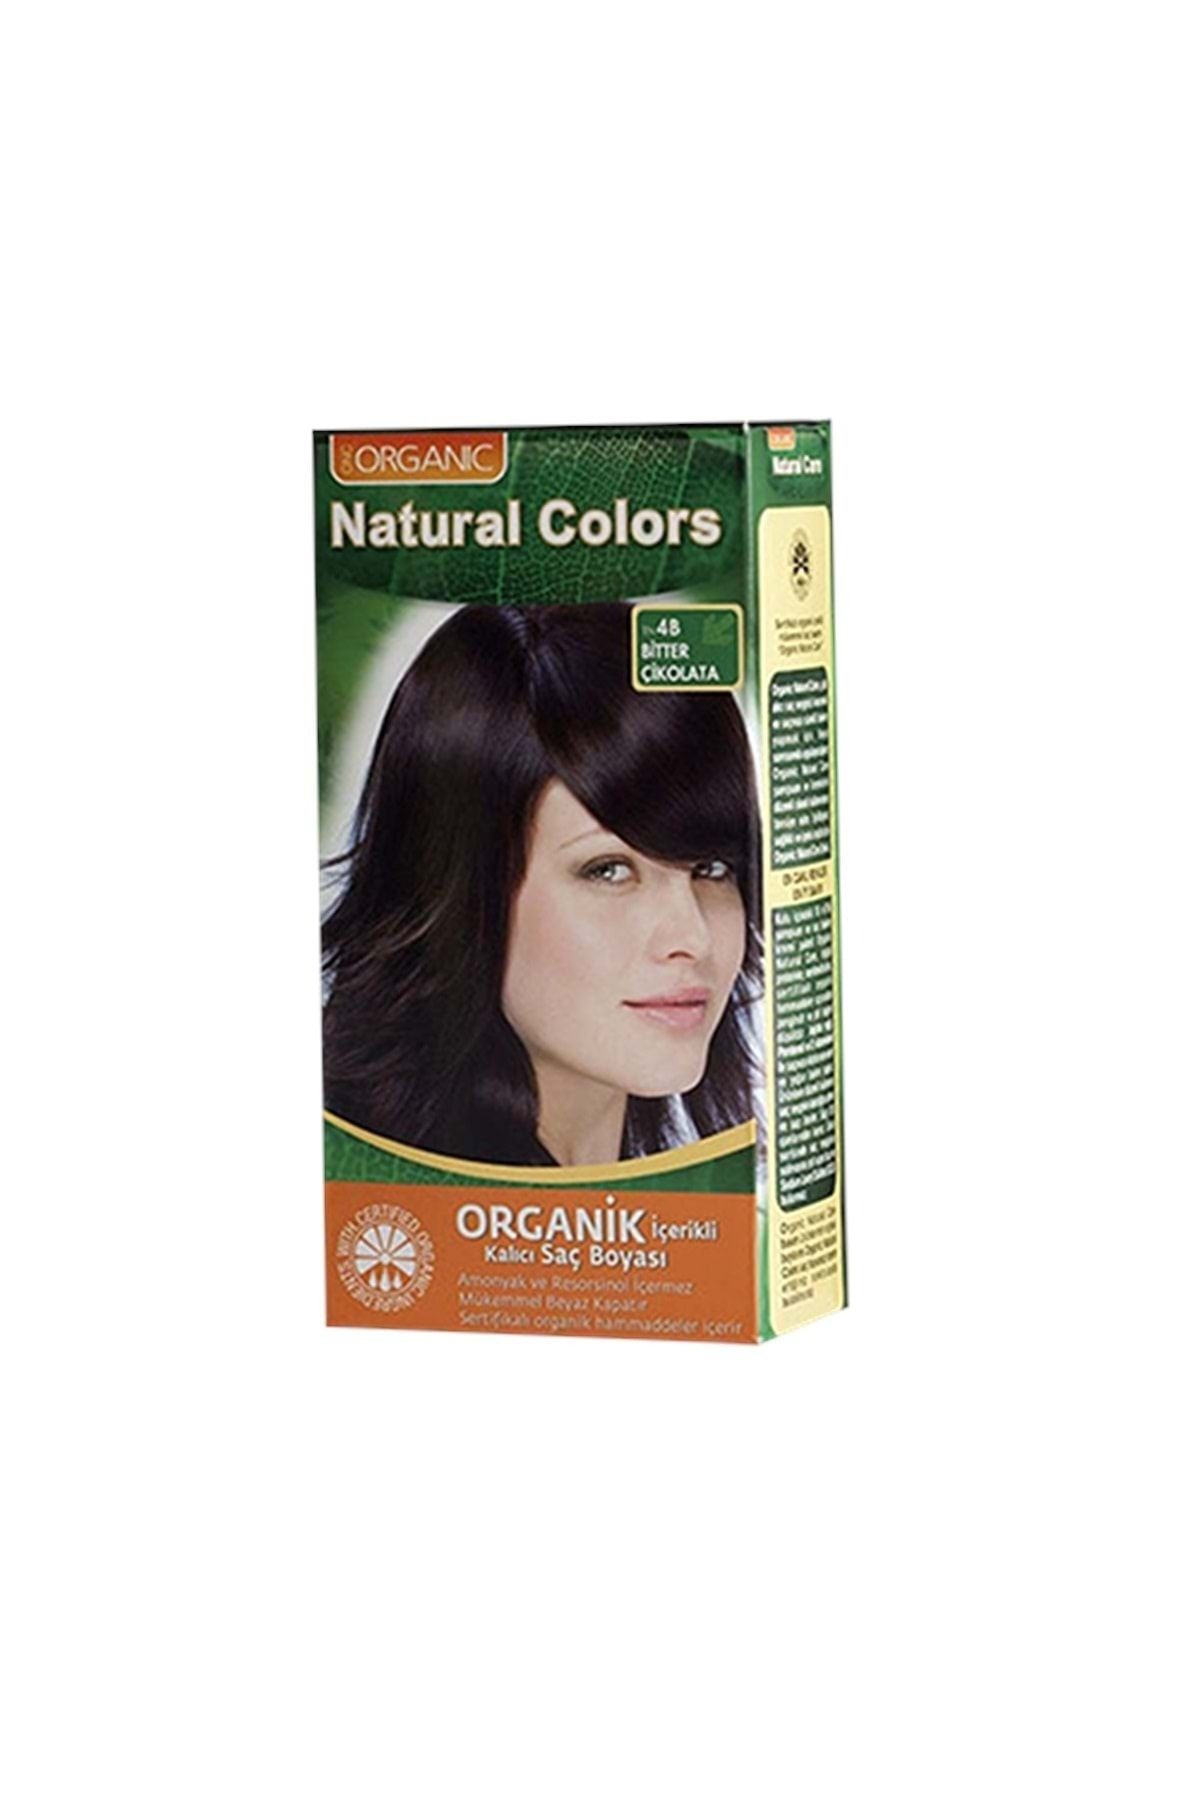 Natural Colors My Naturel Colors Bitkisel Saç Boyası Set 4b**